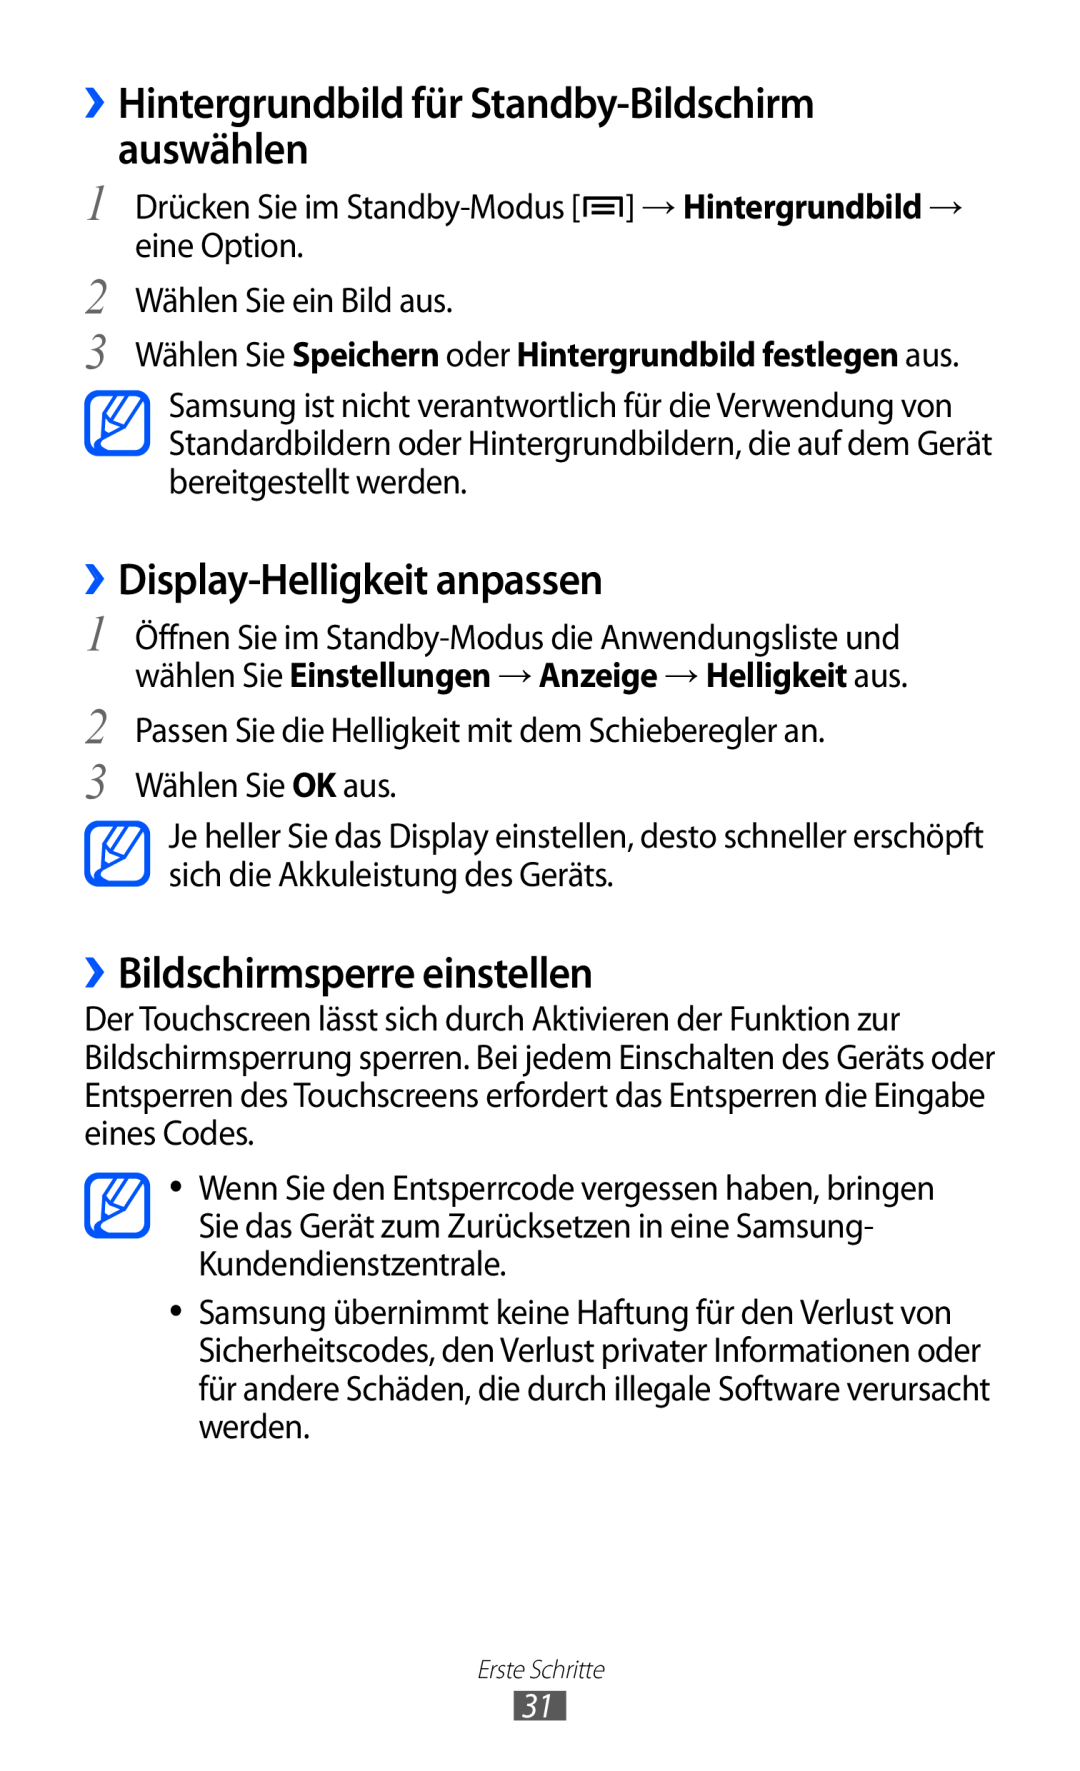 Samsung GT-S6500ZYDDBT, GT-S6500RWDTUR ››Hintergrundbild für Standby-Bildschirm auswählen, ››Display-Helligkeit anpassen 